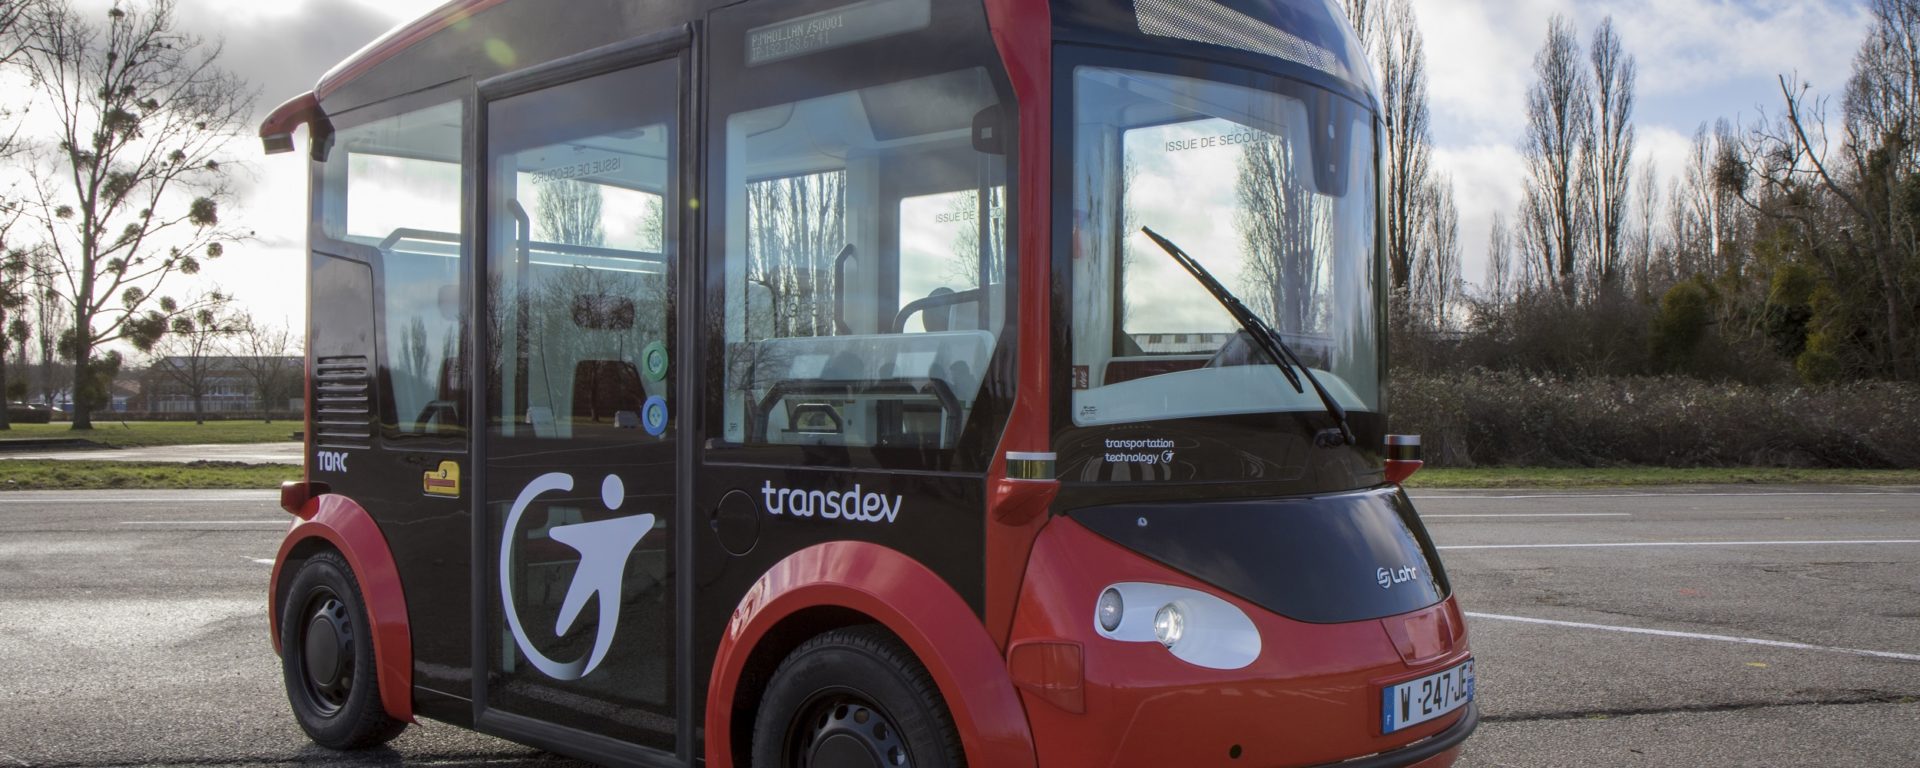 Transdev navette voiture autonome i-Cristal TORC autonomous shuttle mobility company